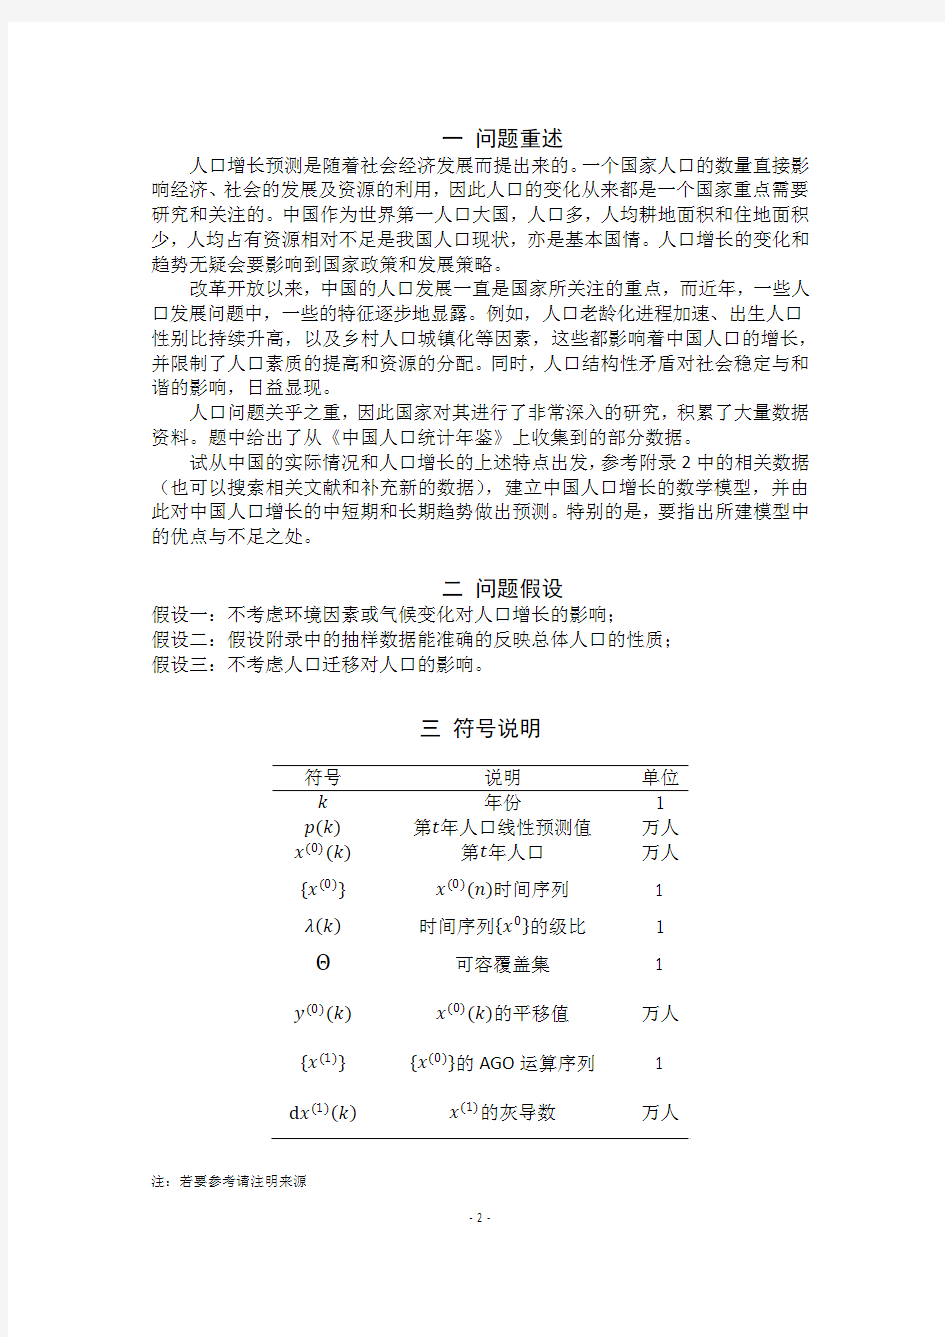 中国人口预测模型(灰色理论模型)